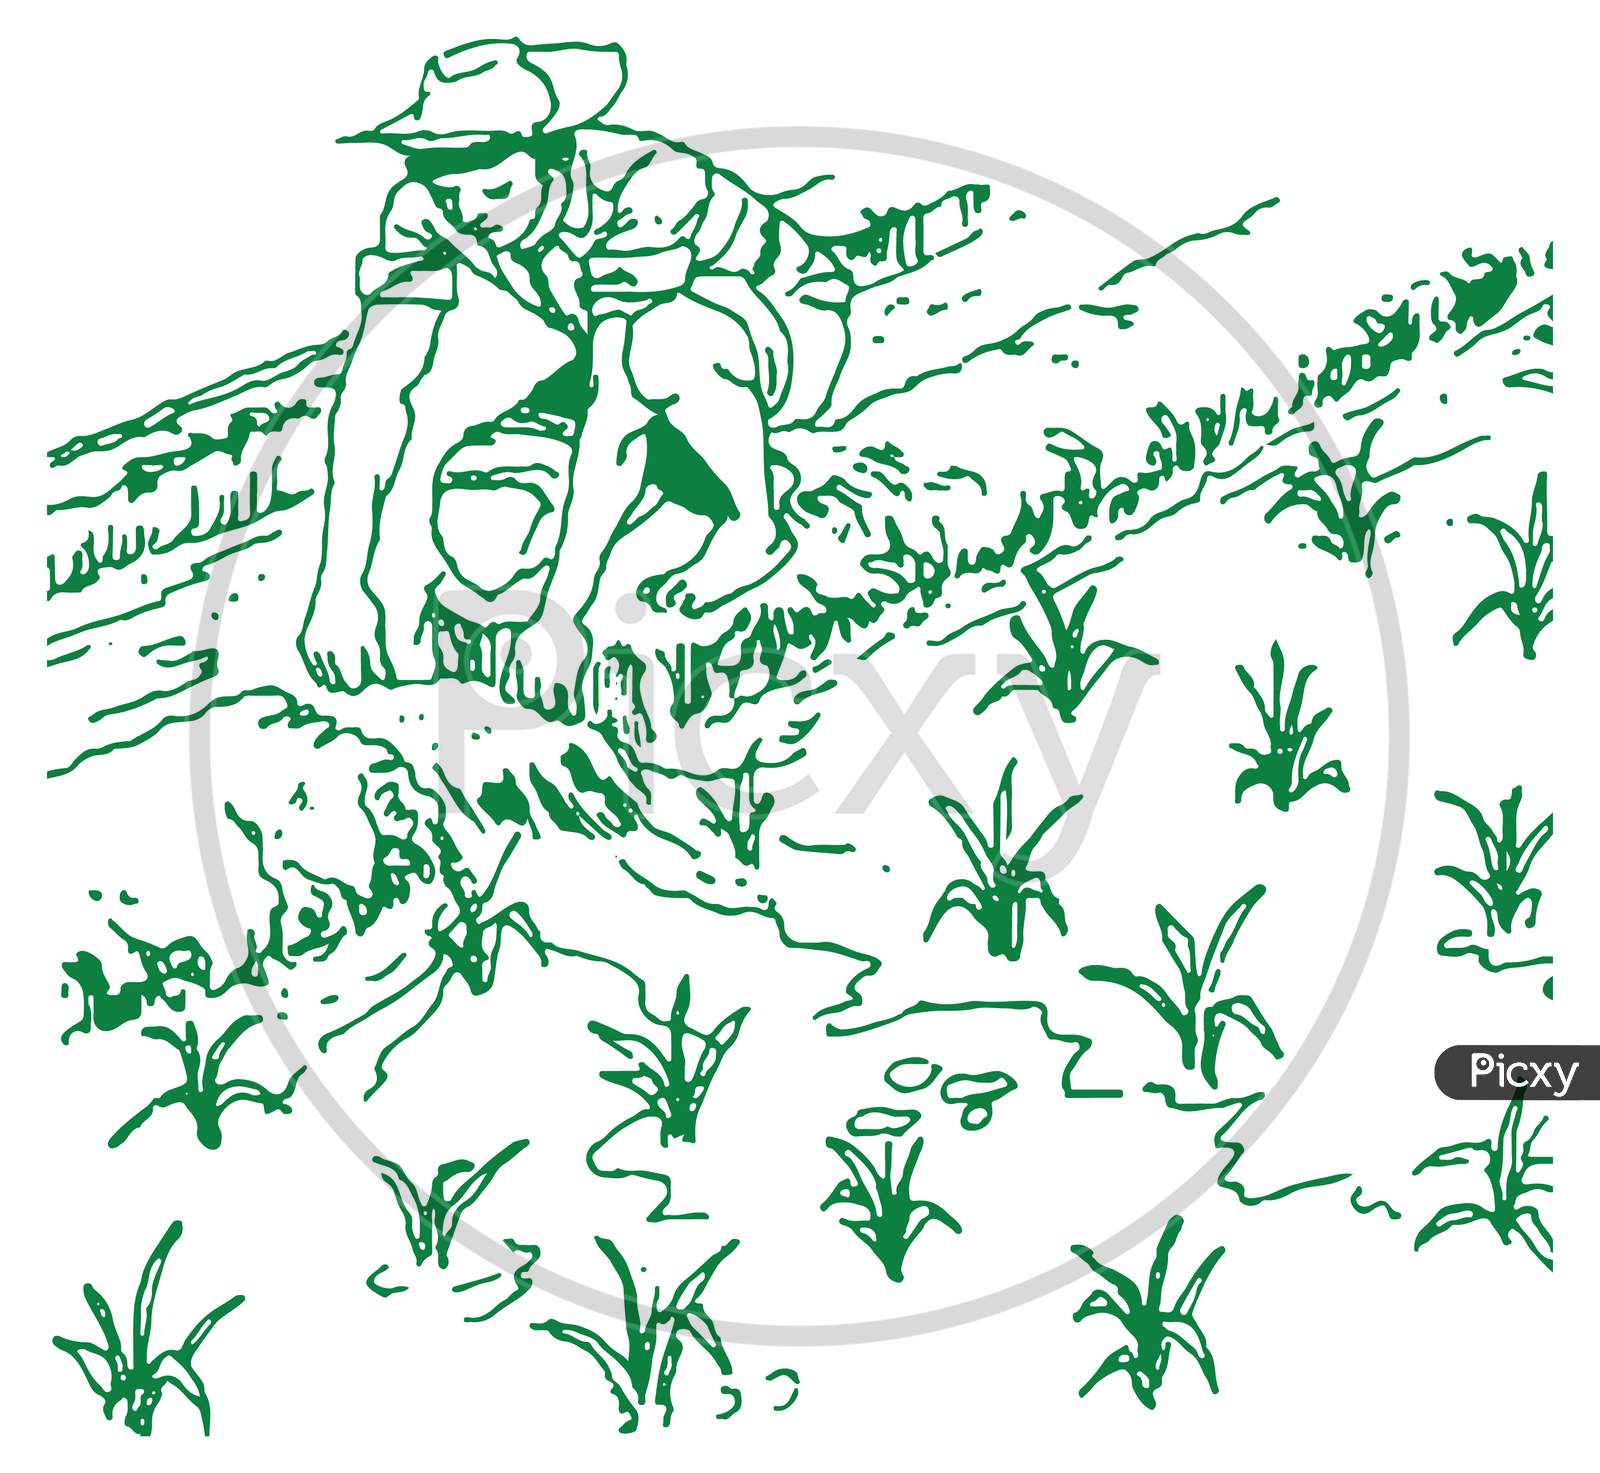 Farmer boy sketch by JB on Dribbble